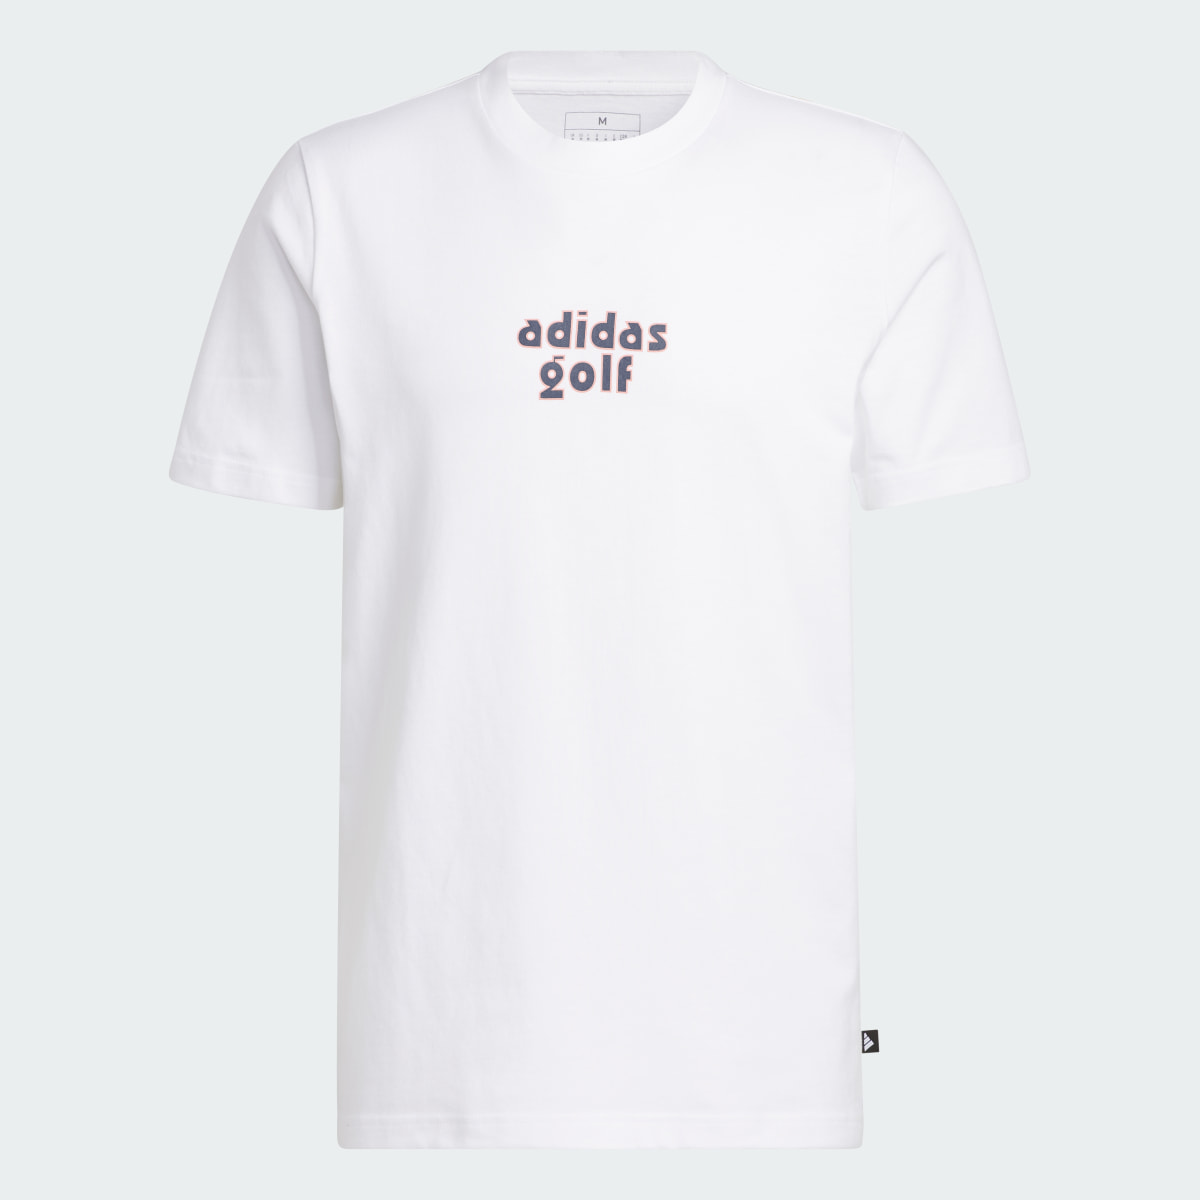 Adidas Camiseta Golf Graphic. 5